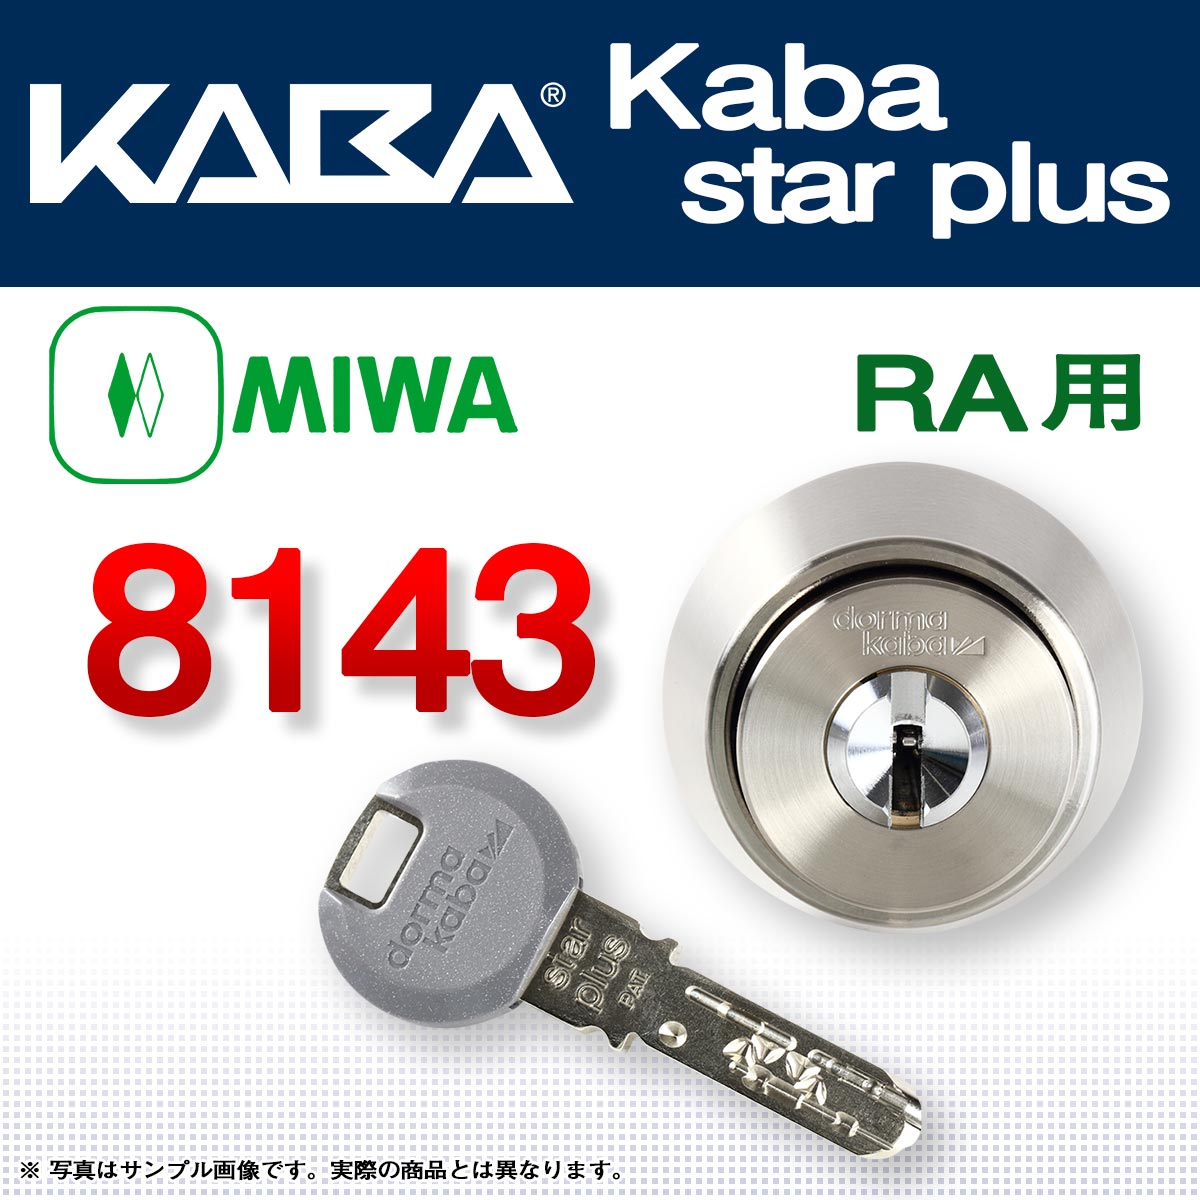 カバスタープラス 8143 【MIWA RA】美和ロック RA交換用シリンダーが激安最安値